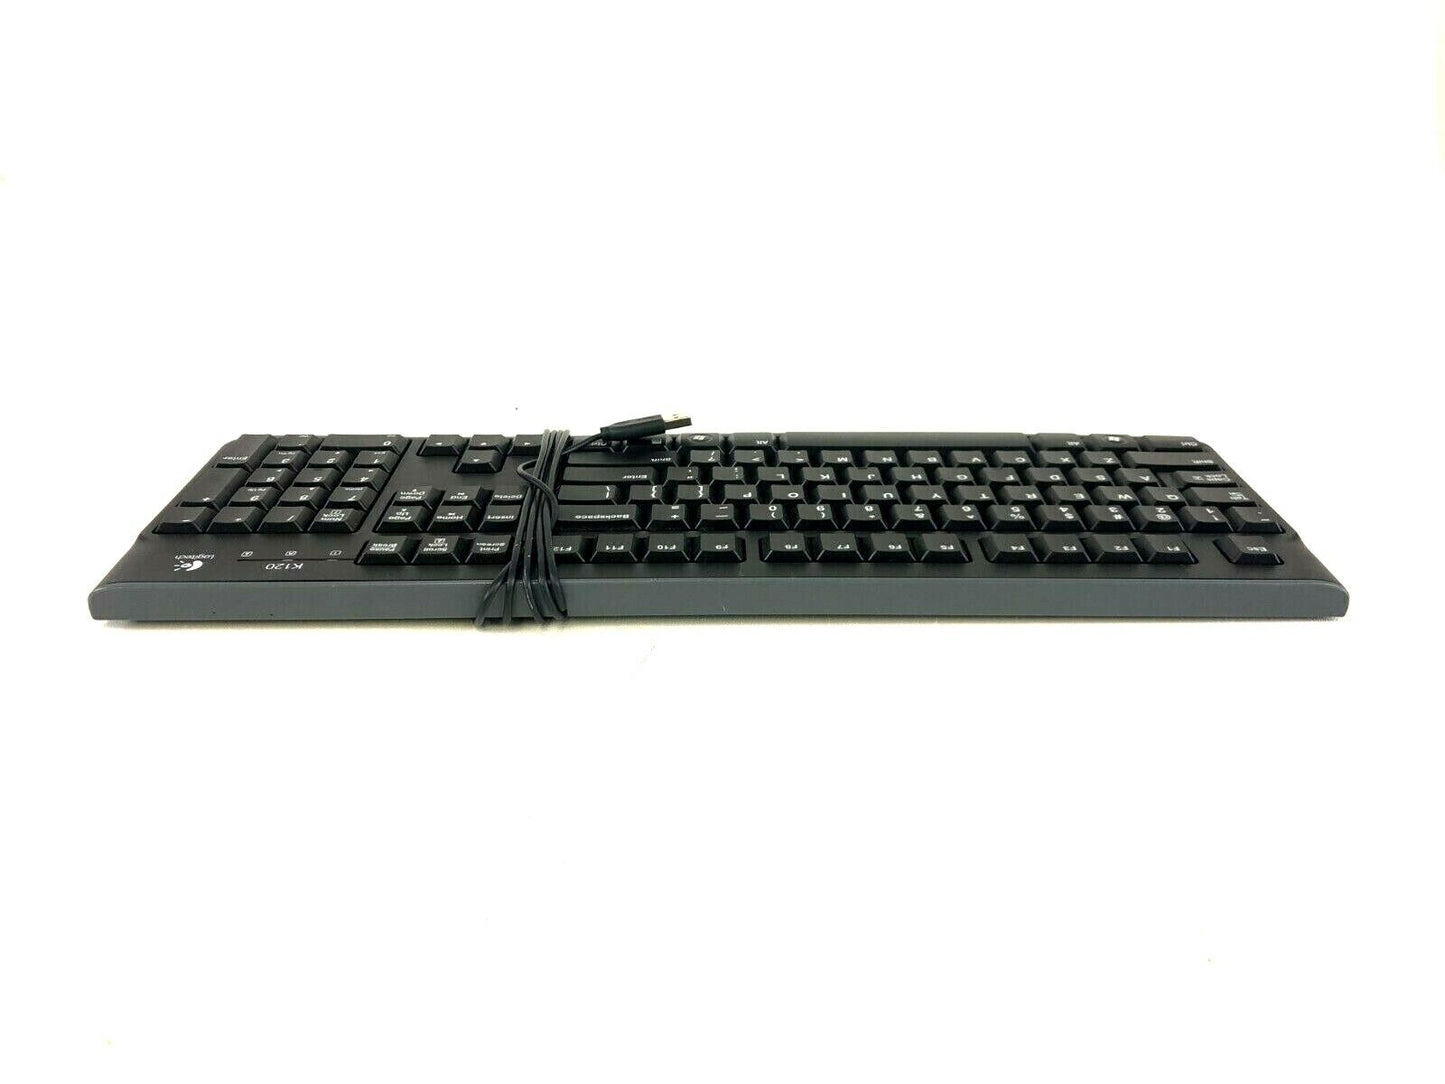 Lot of 5 Logitech K120 USB Wired Keyboard Black 820-004520